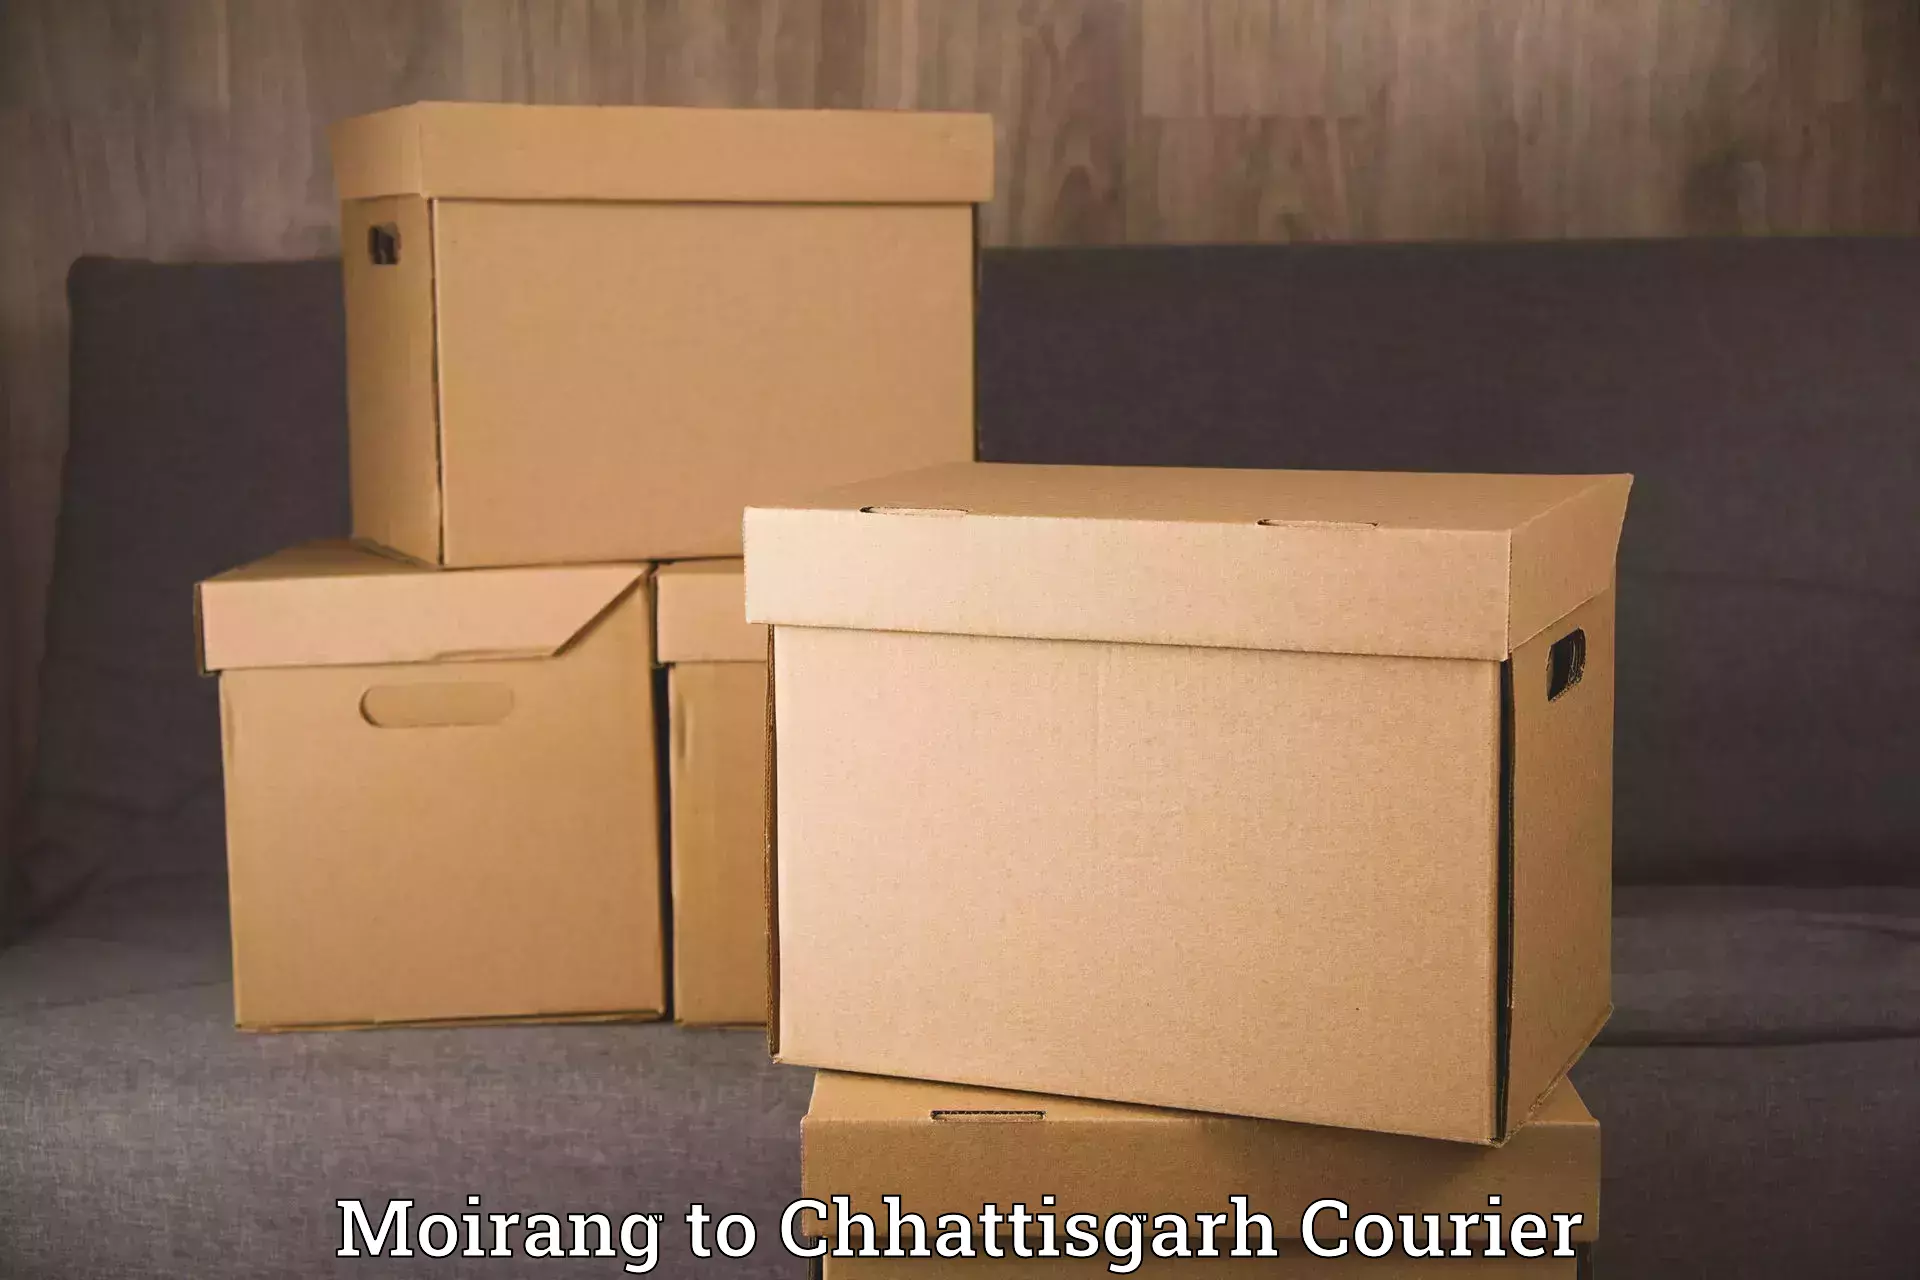 Household transport experts Moirang to Korea Chhattisgarh